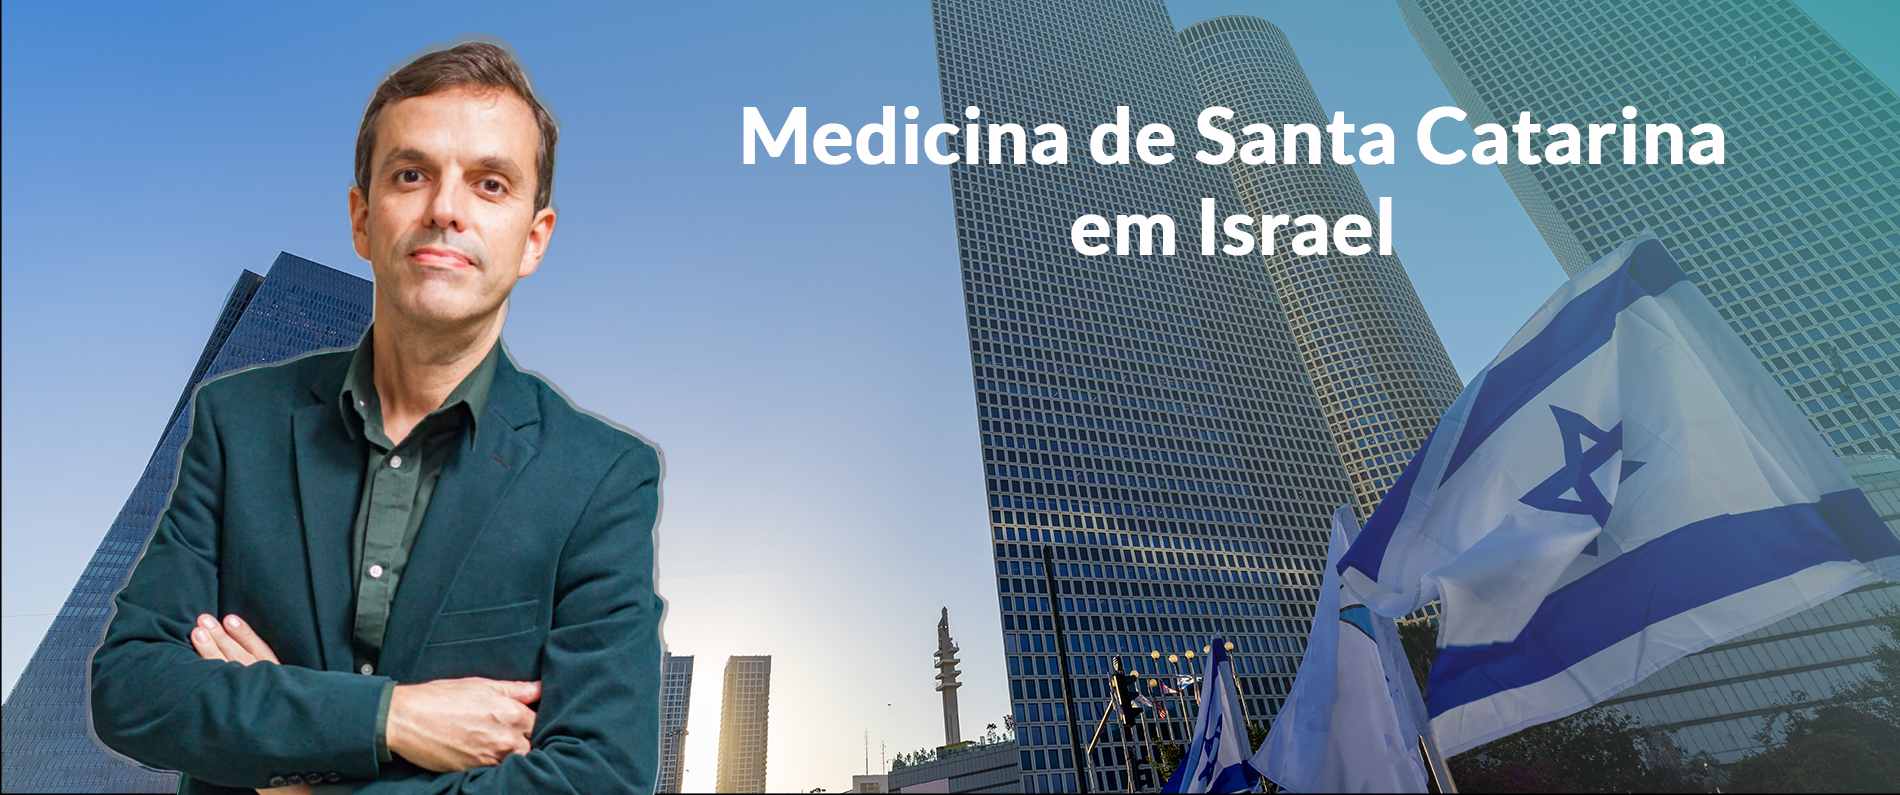 Medicina de Santa Catarina em Israel